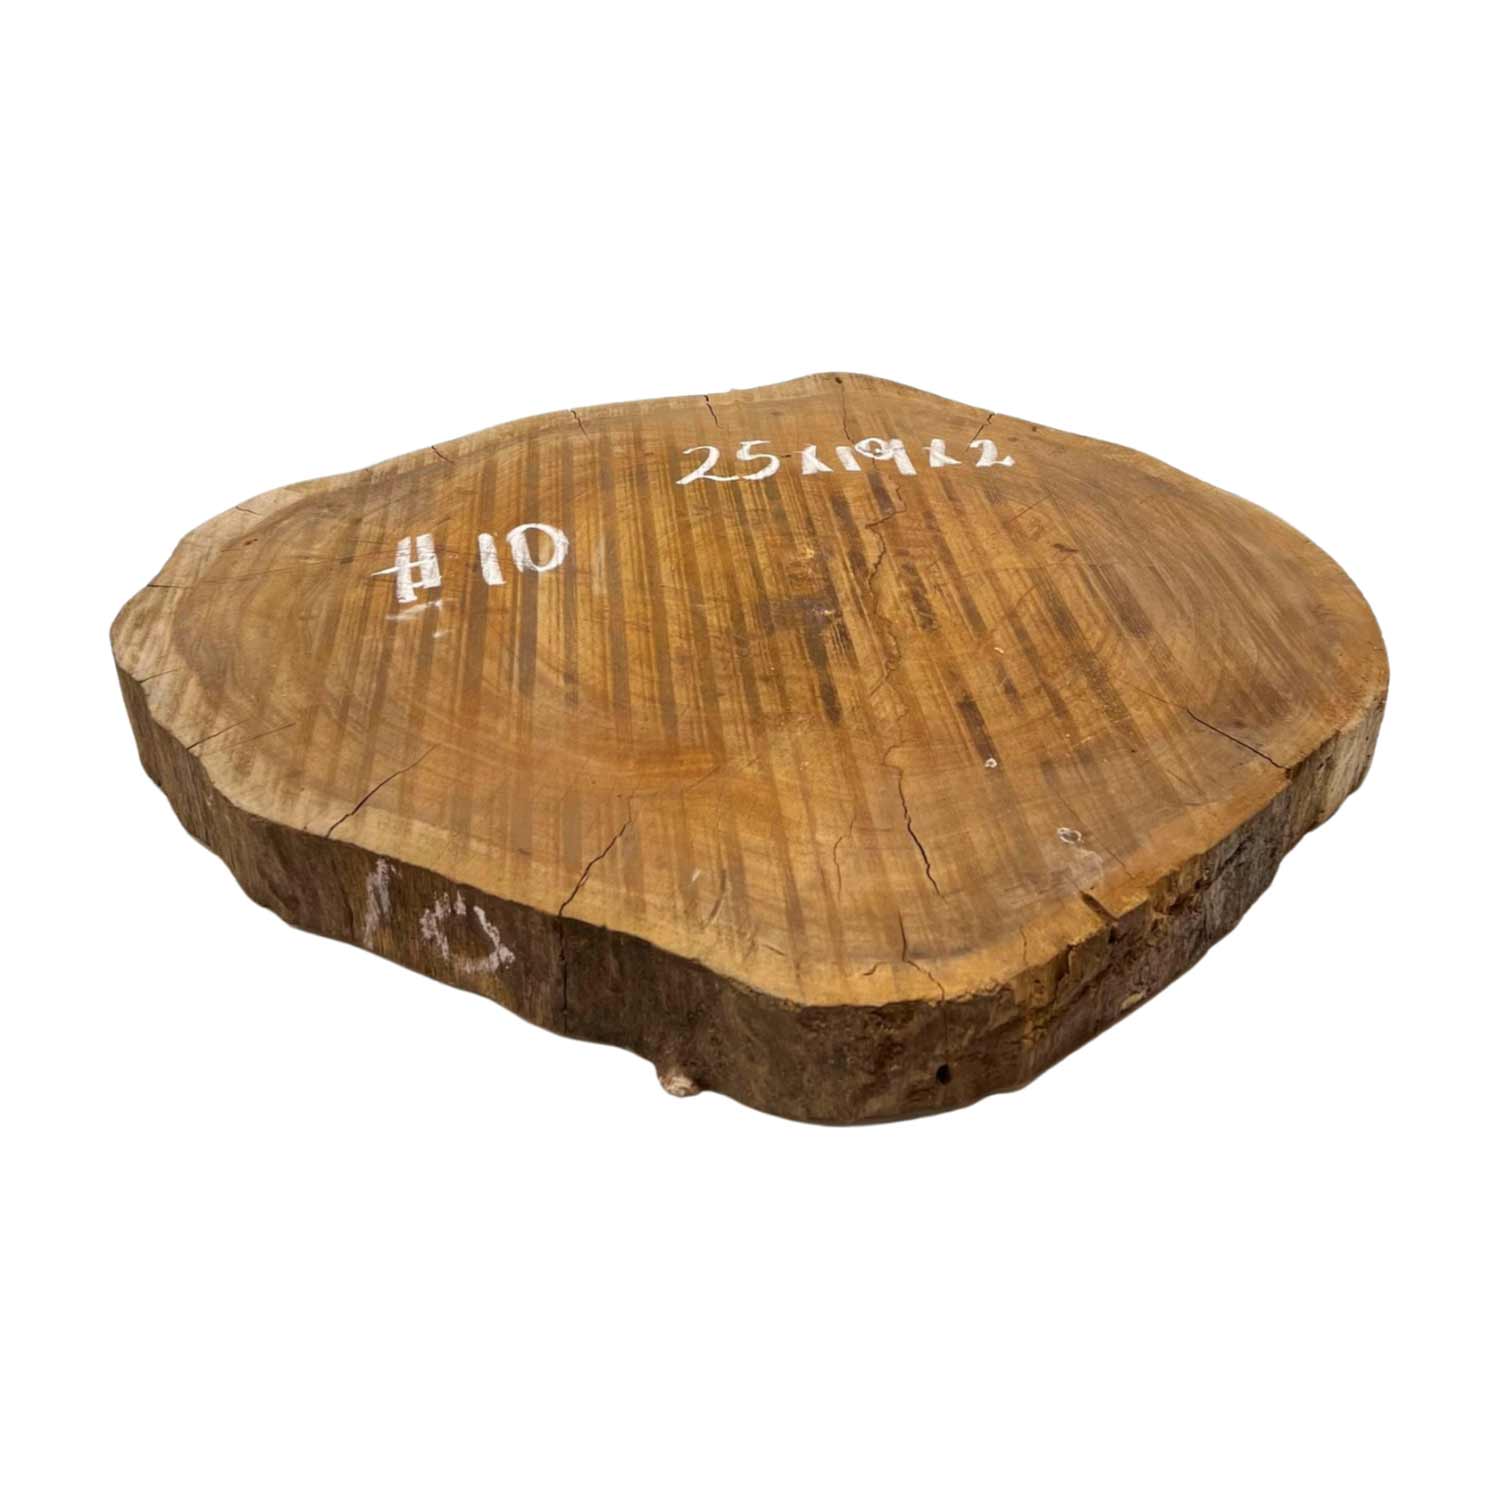 Hermosas y raras losas/galletas de borde vivo de madera negra africana - 24&quot;x24-1/2&quot;x3&quot;, 